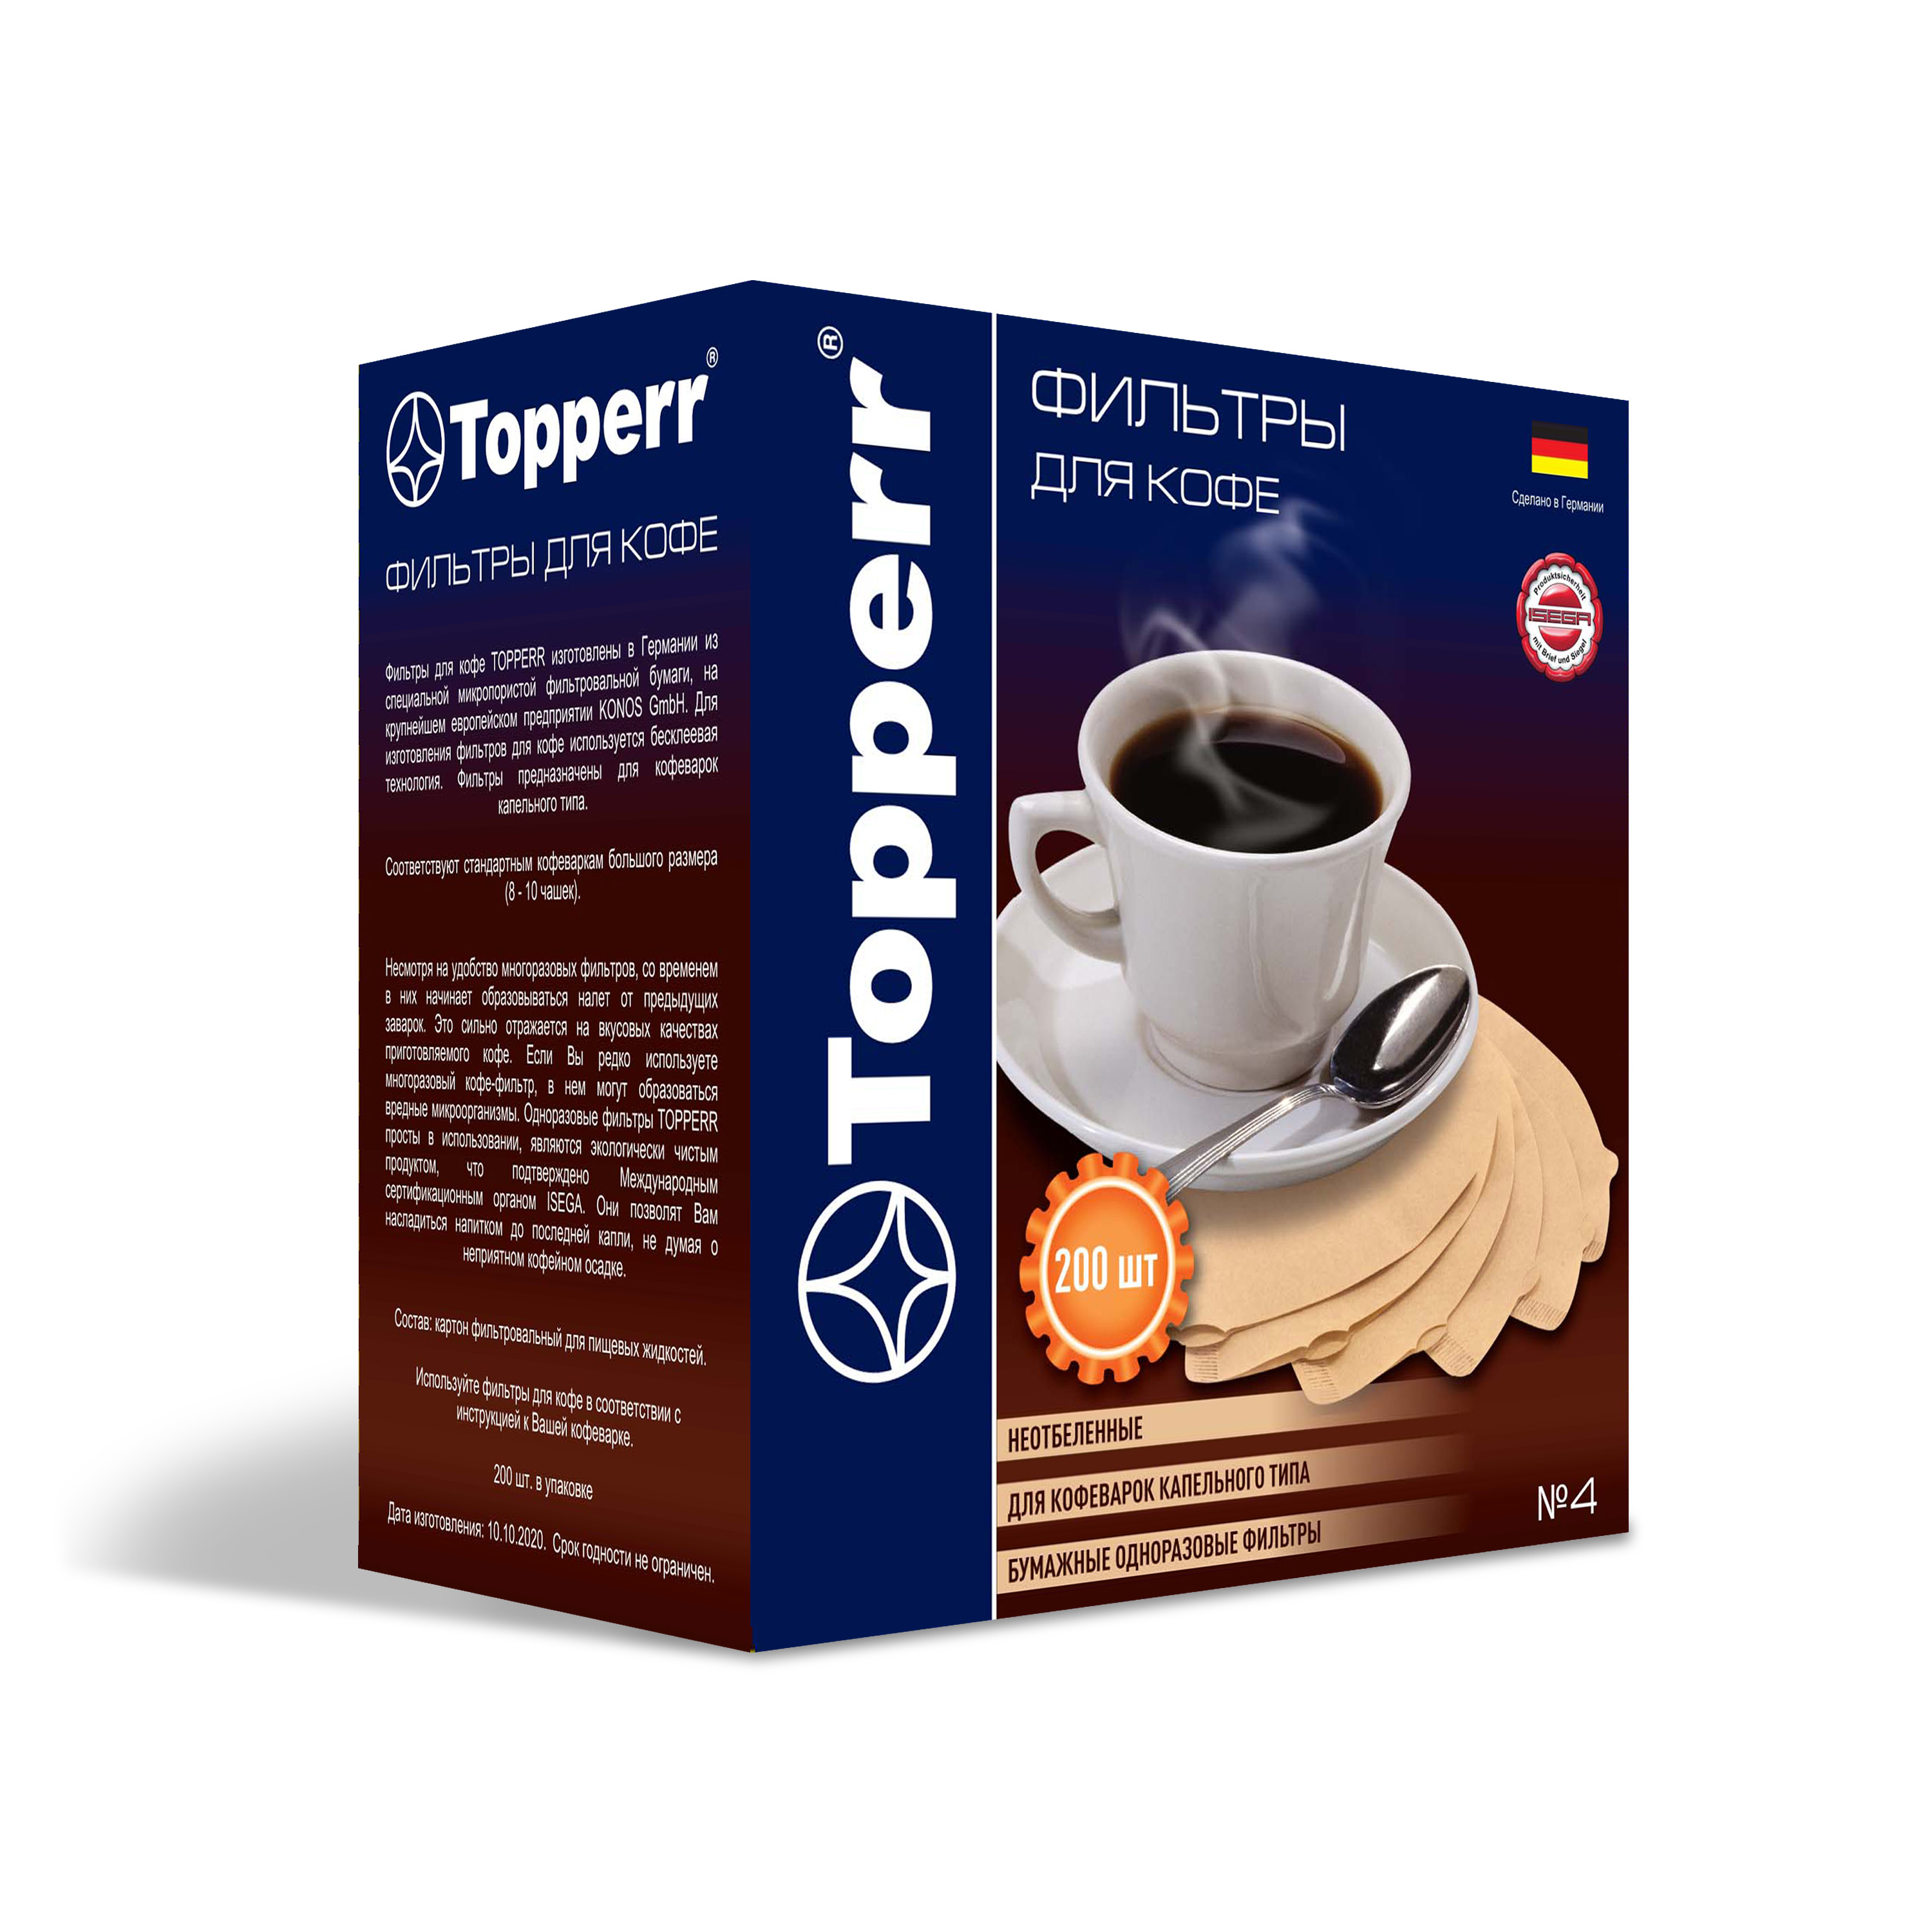 Topperr 3046 Бумажные одноразовые фильтры для кофе №4 200 шт неотбеленные topperr 3046 бумажные одноразовые фильтры для кофе 4 200 шт неотбеленные